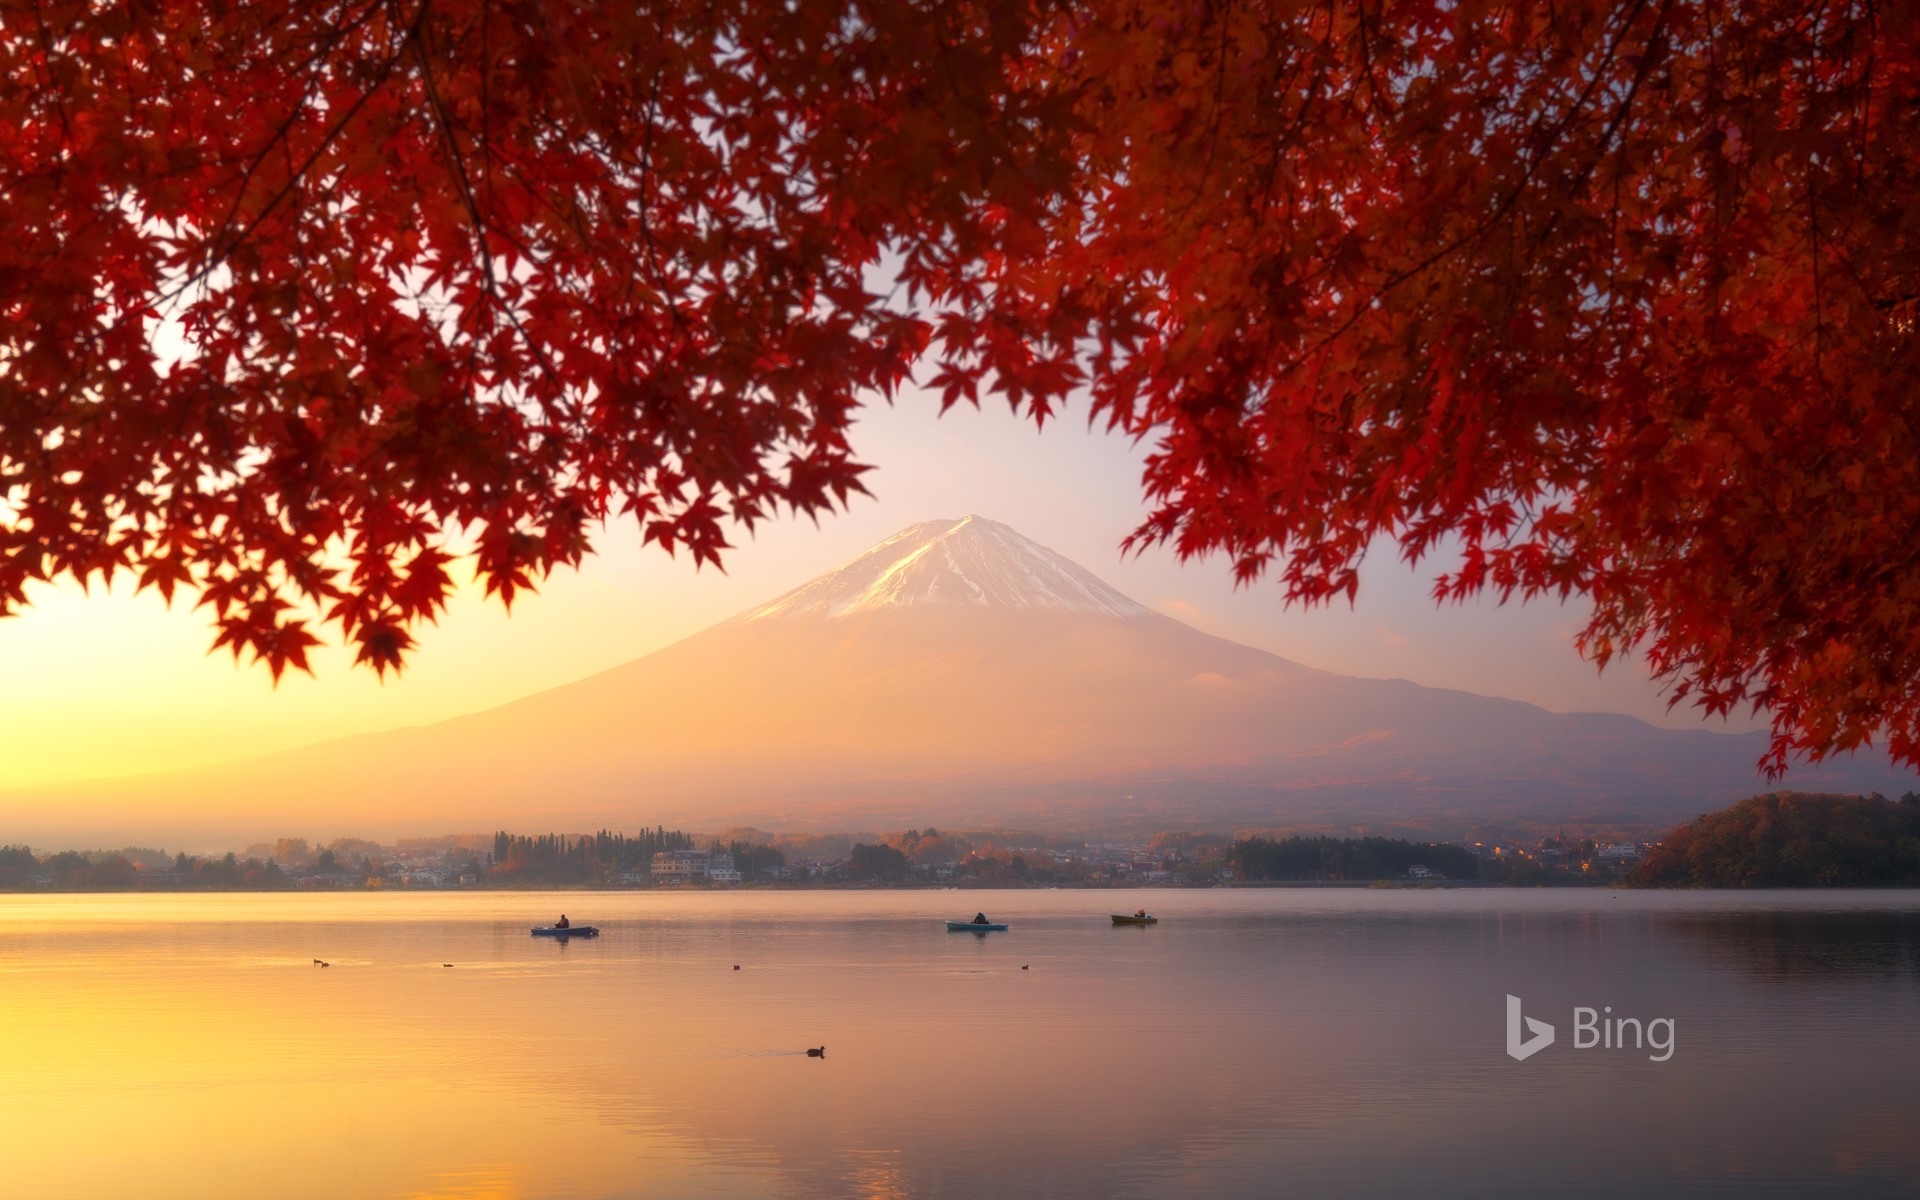 "Mt Fuji seen from Lake Kawaguchi" Yamanashi